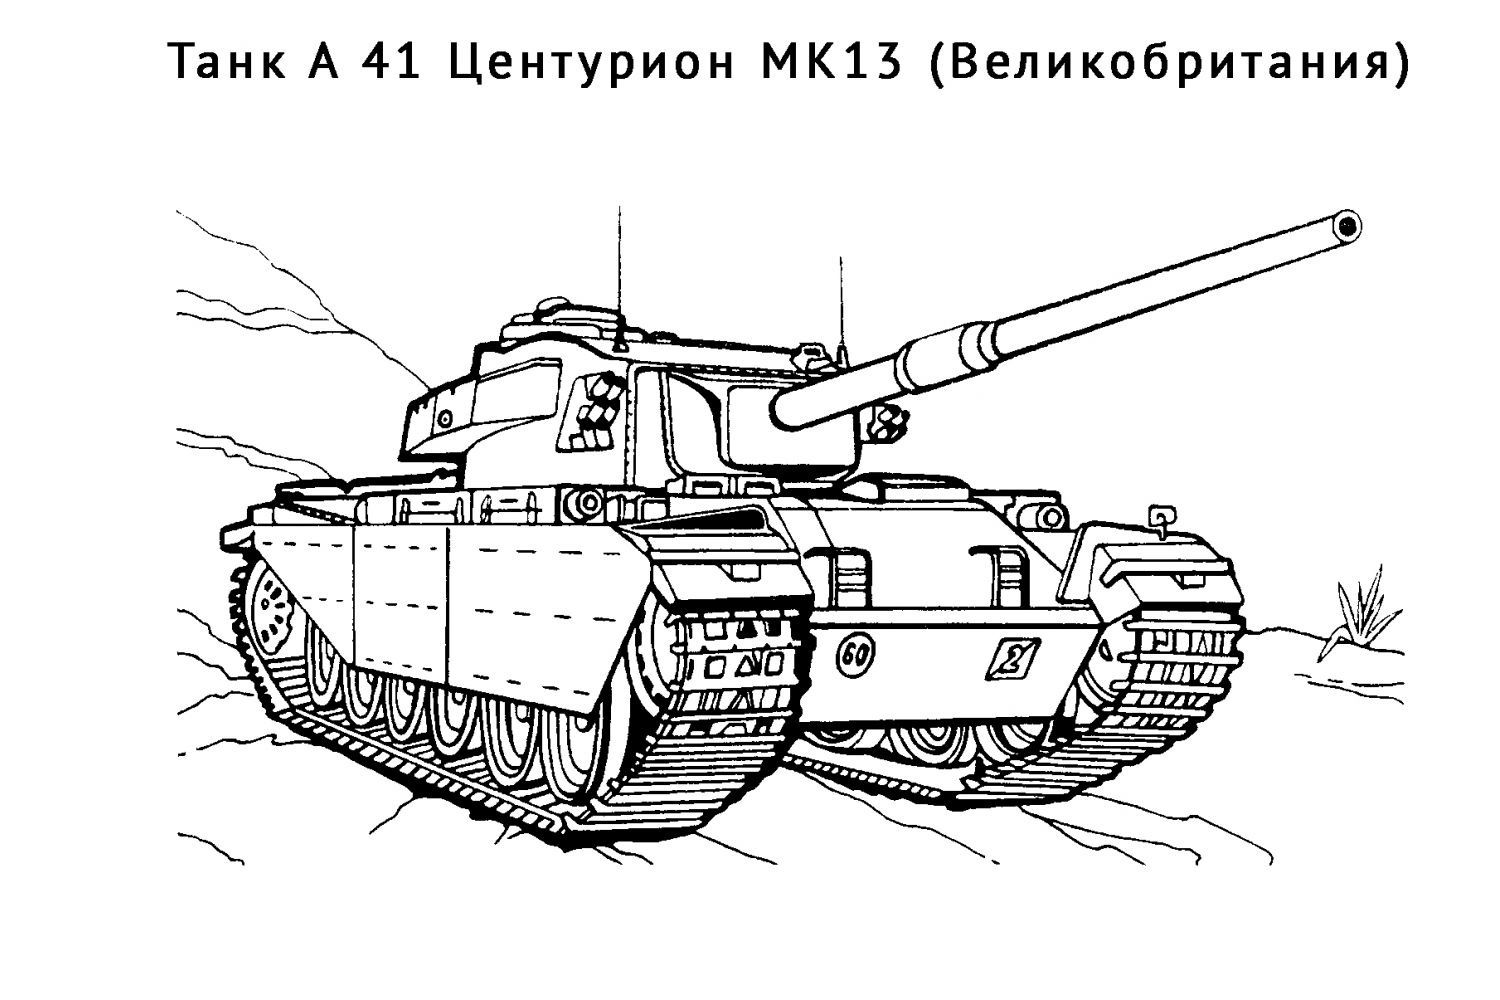 tank A 41 Centurion MK13 omalovánka